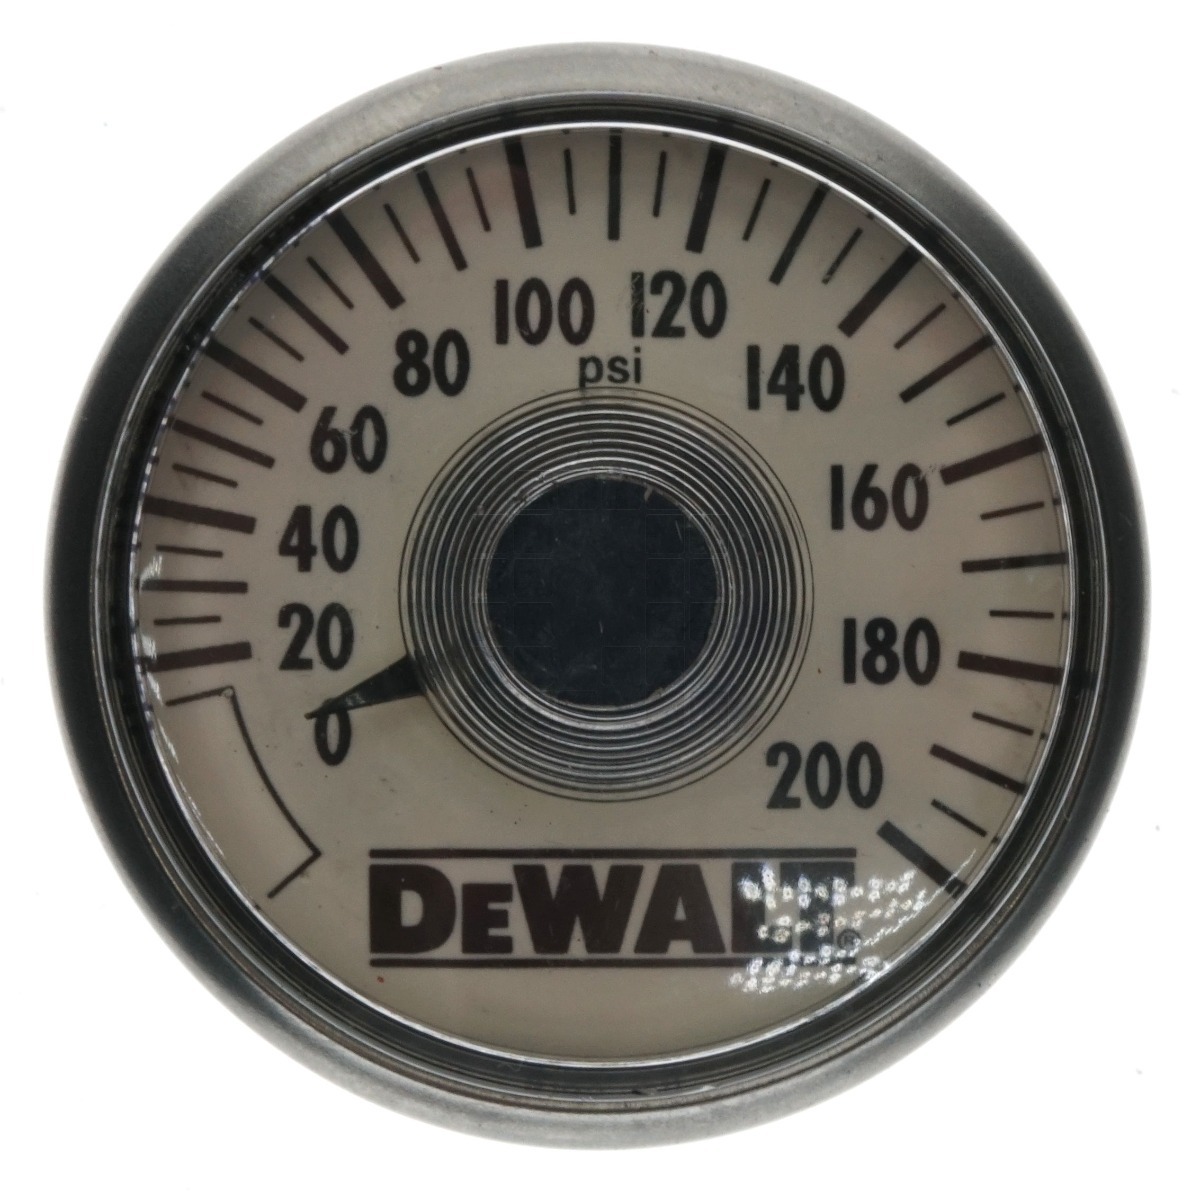 DeWALT 5130205-00 Air Pressure Gauge, 0-200 PSI, 1/4"-18 NPT